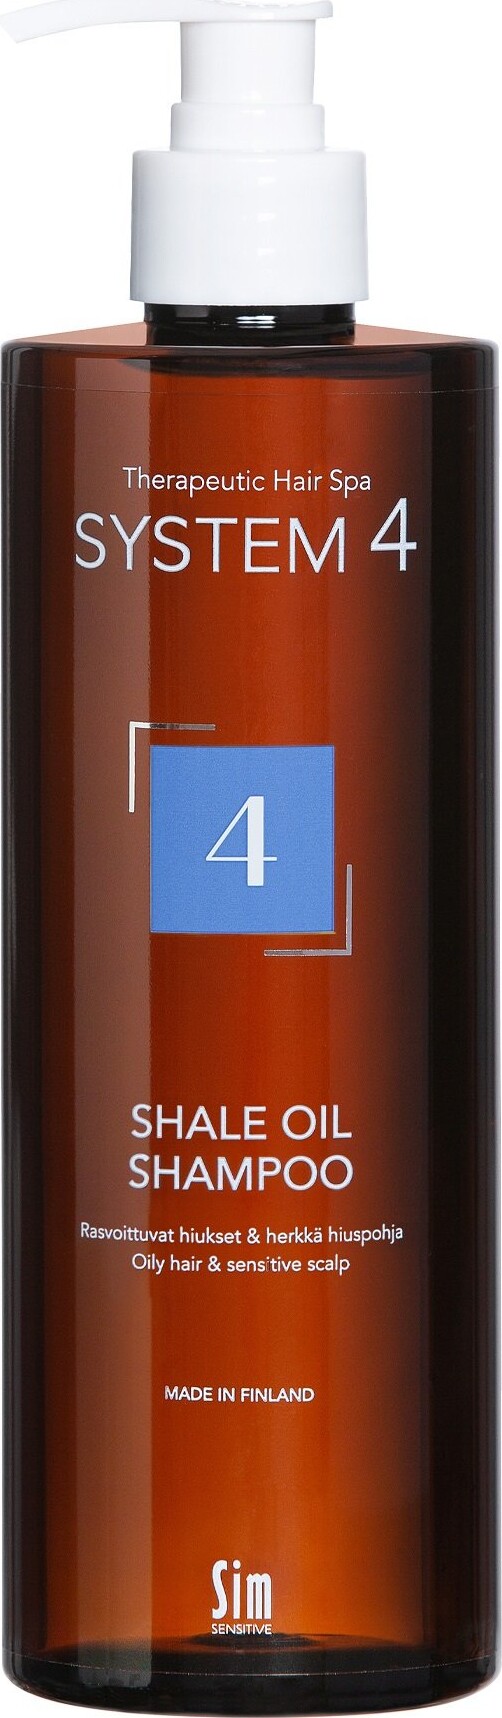 System 4 - Shale Oil Shampoo 4 - 500 Ml | Se tilbud køb på Gucca.dk